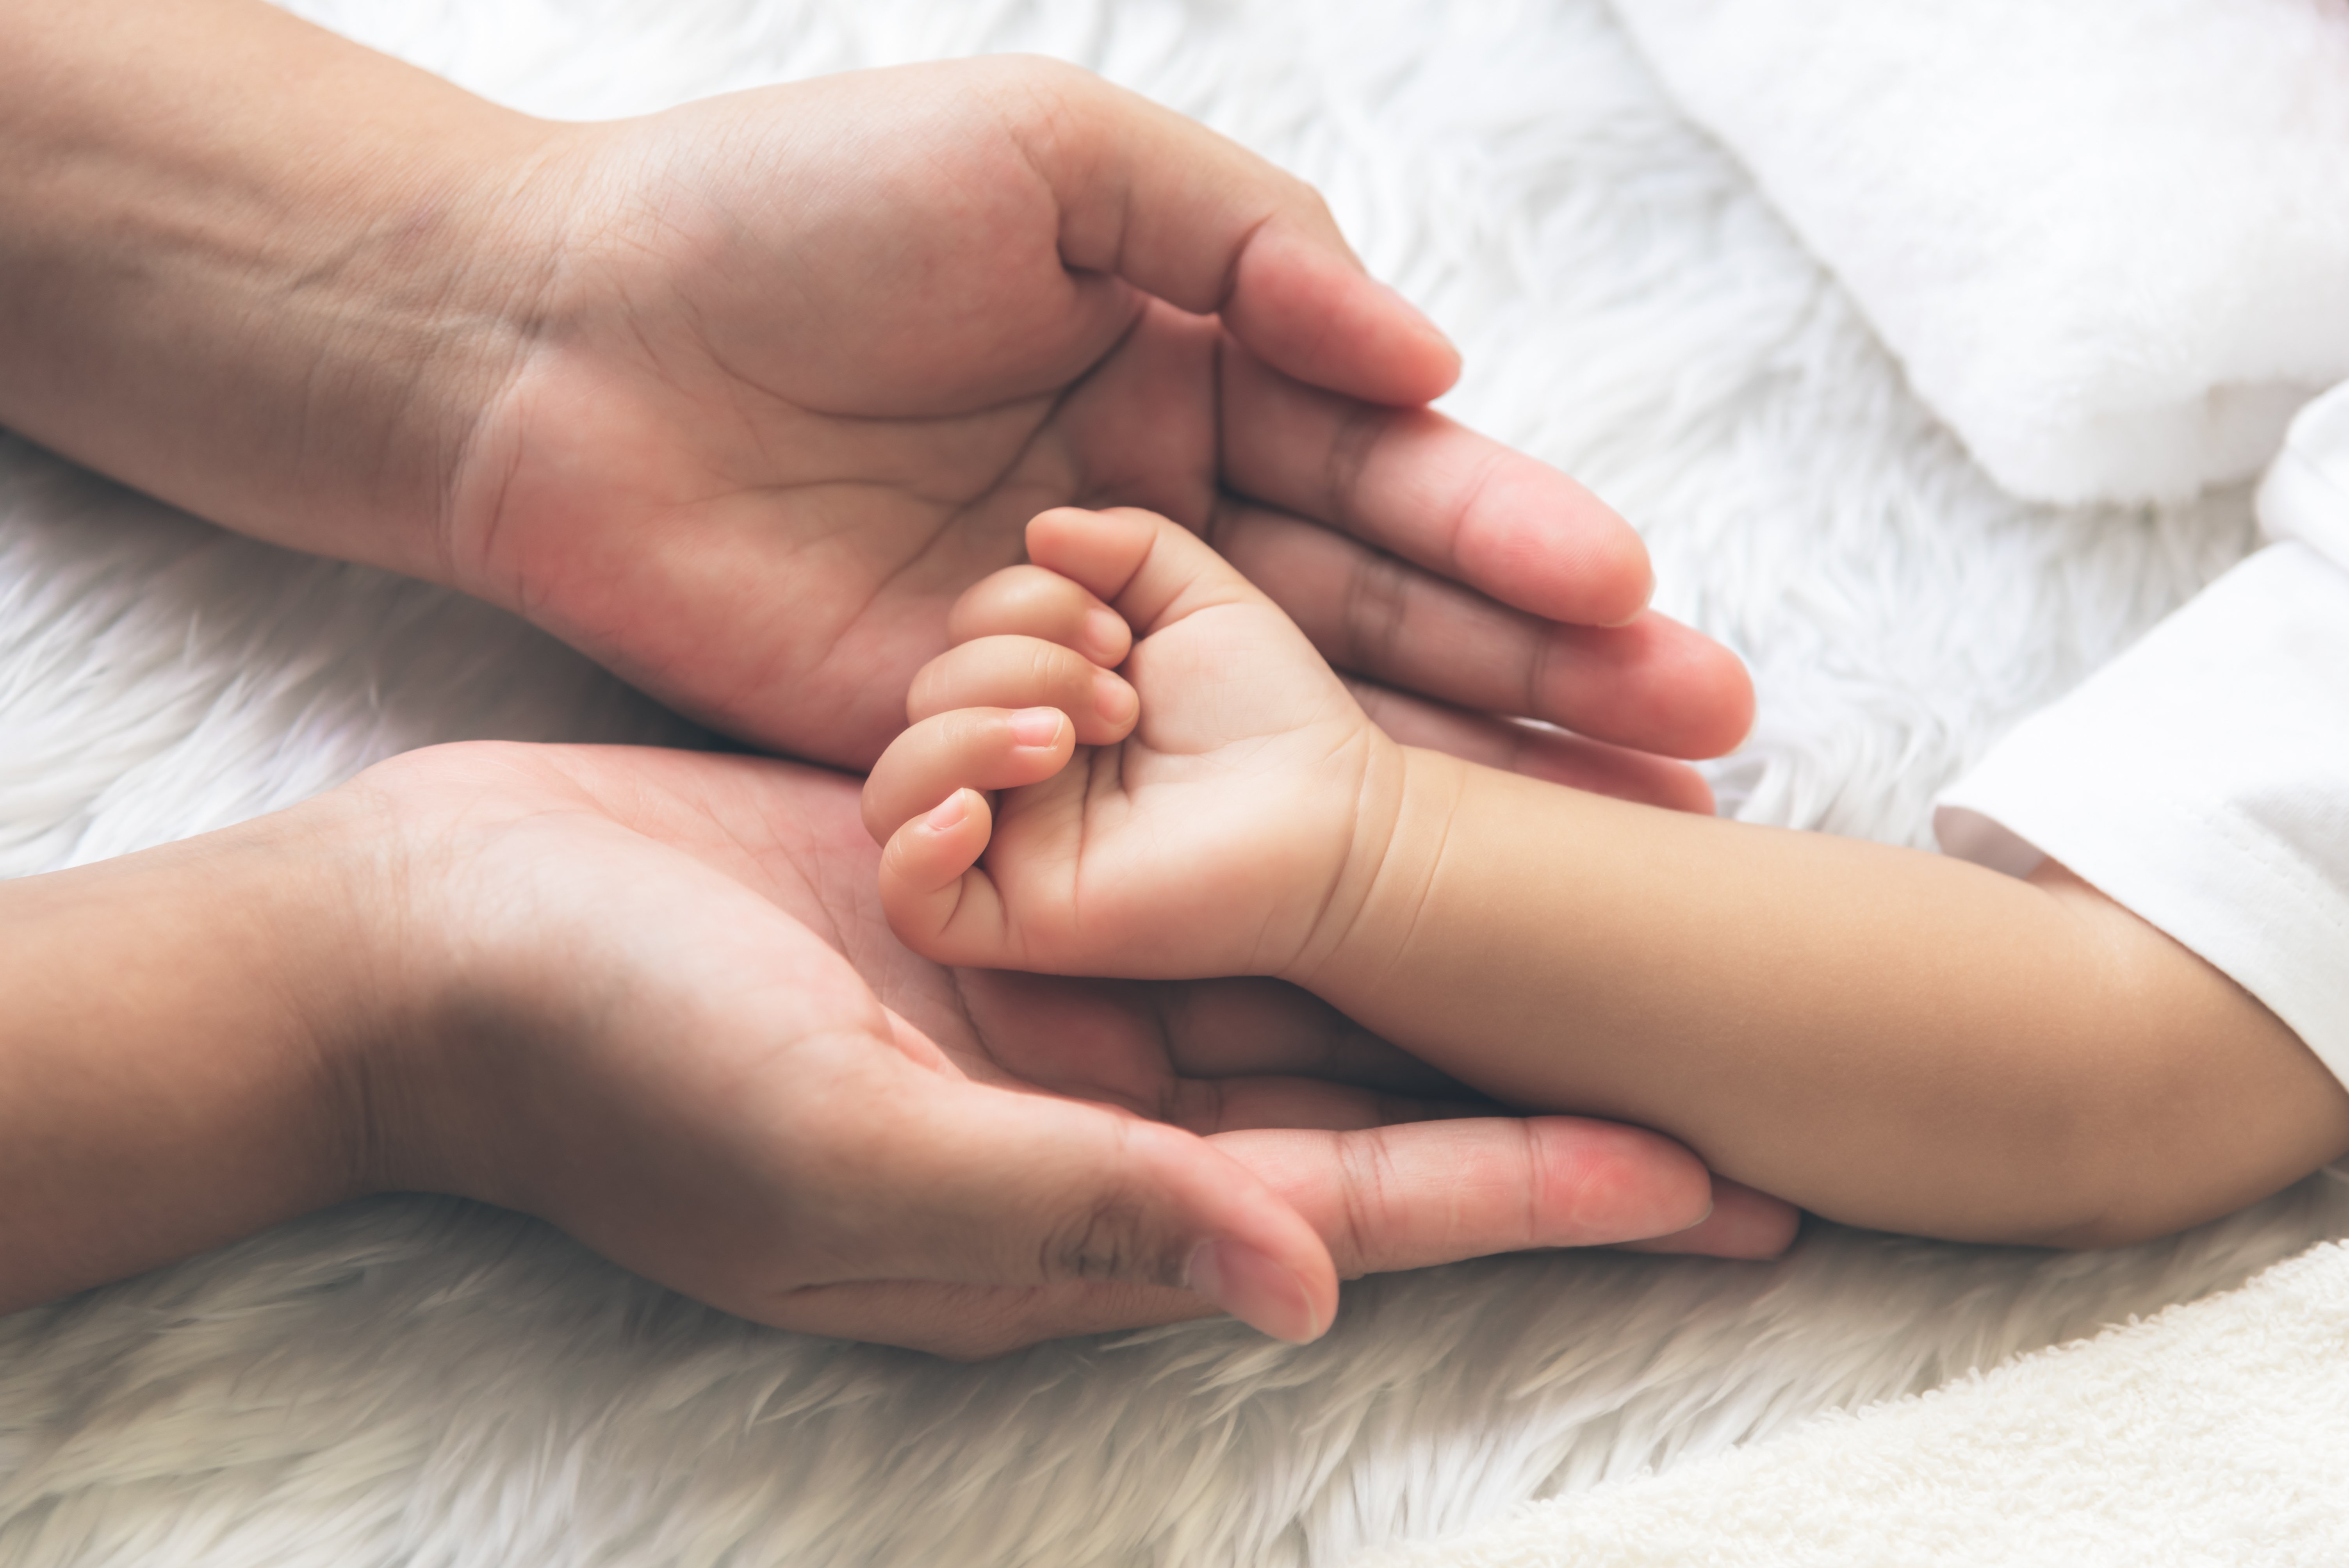 Hand des Babys auf die Hand der Mutter gelegt | Quelle: Shutterstock